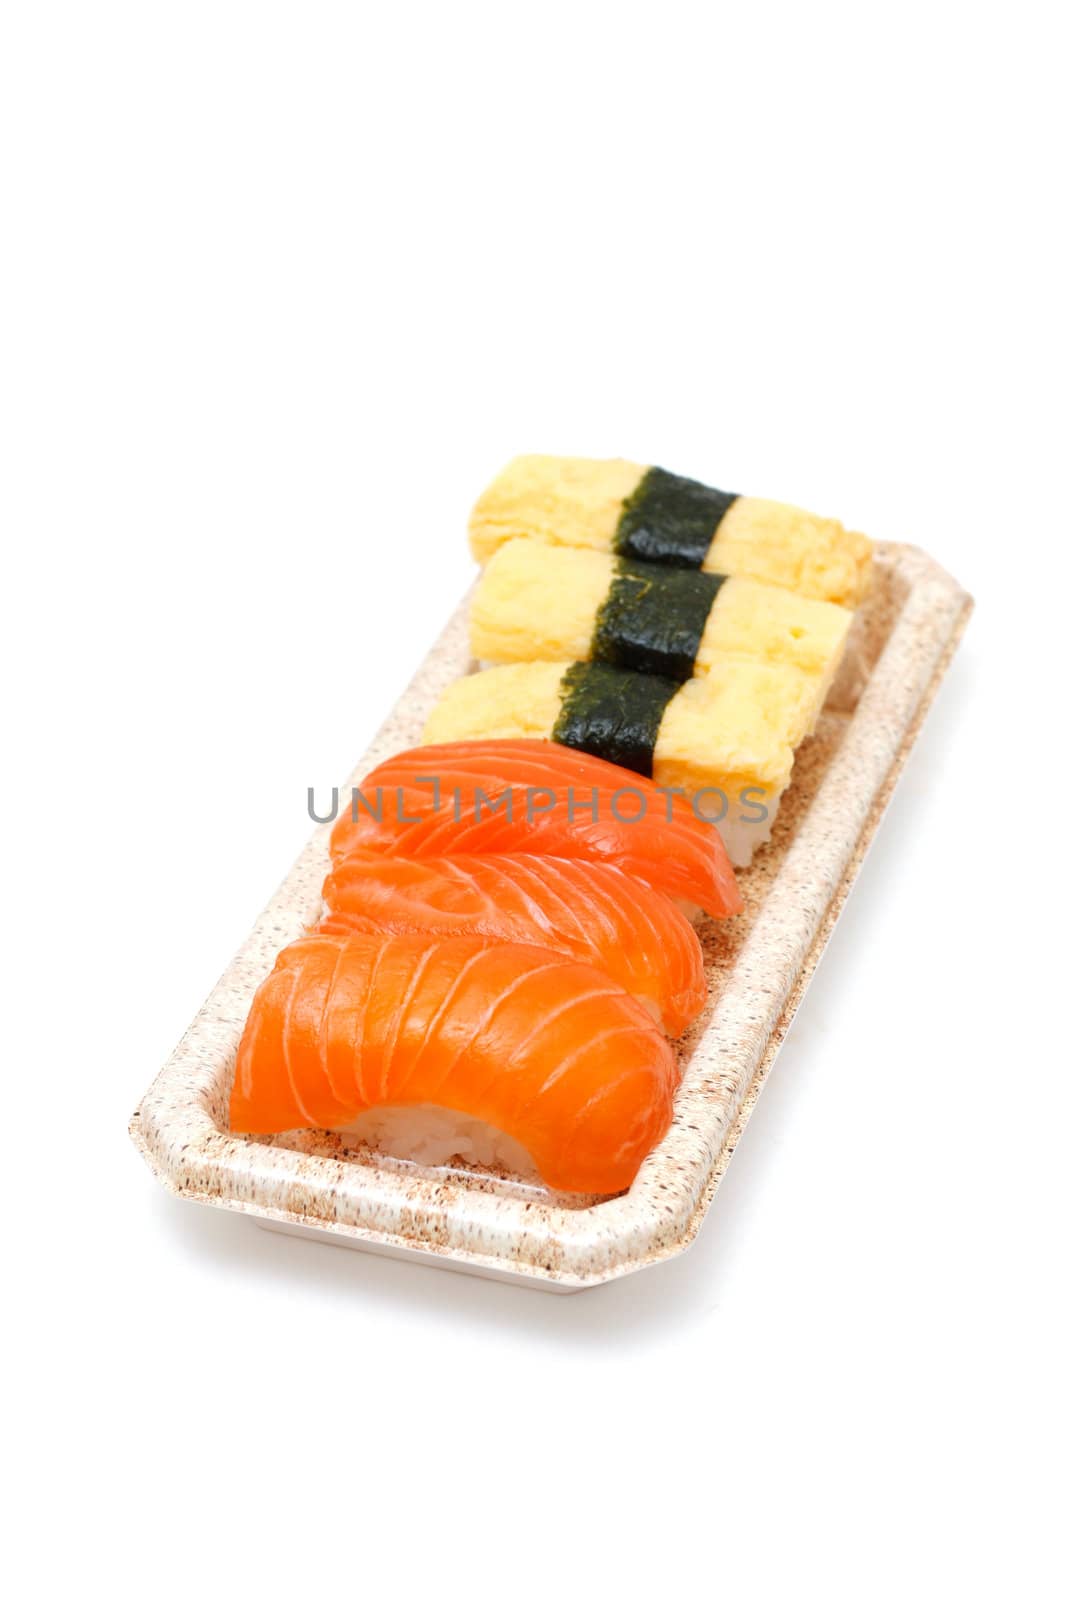 Sushi by leeser